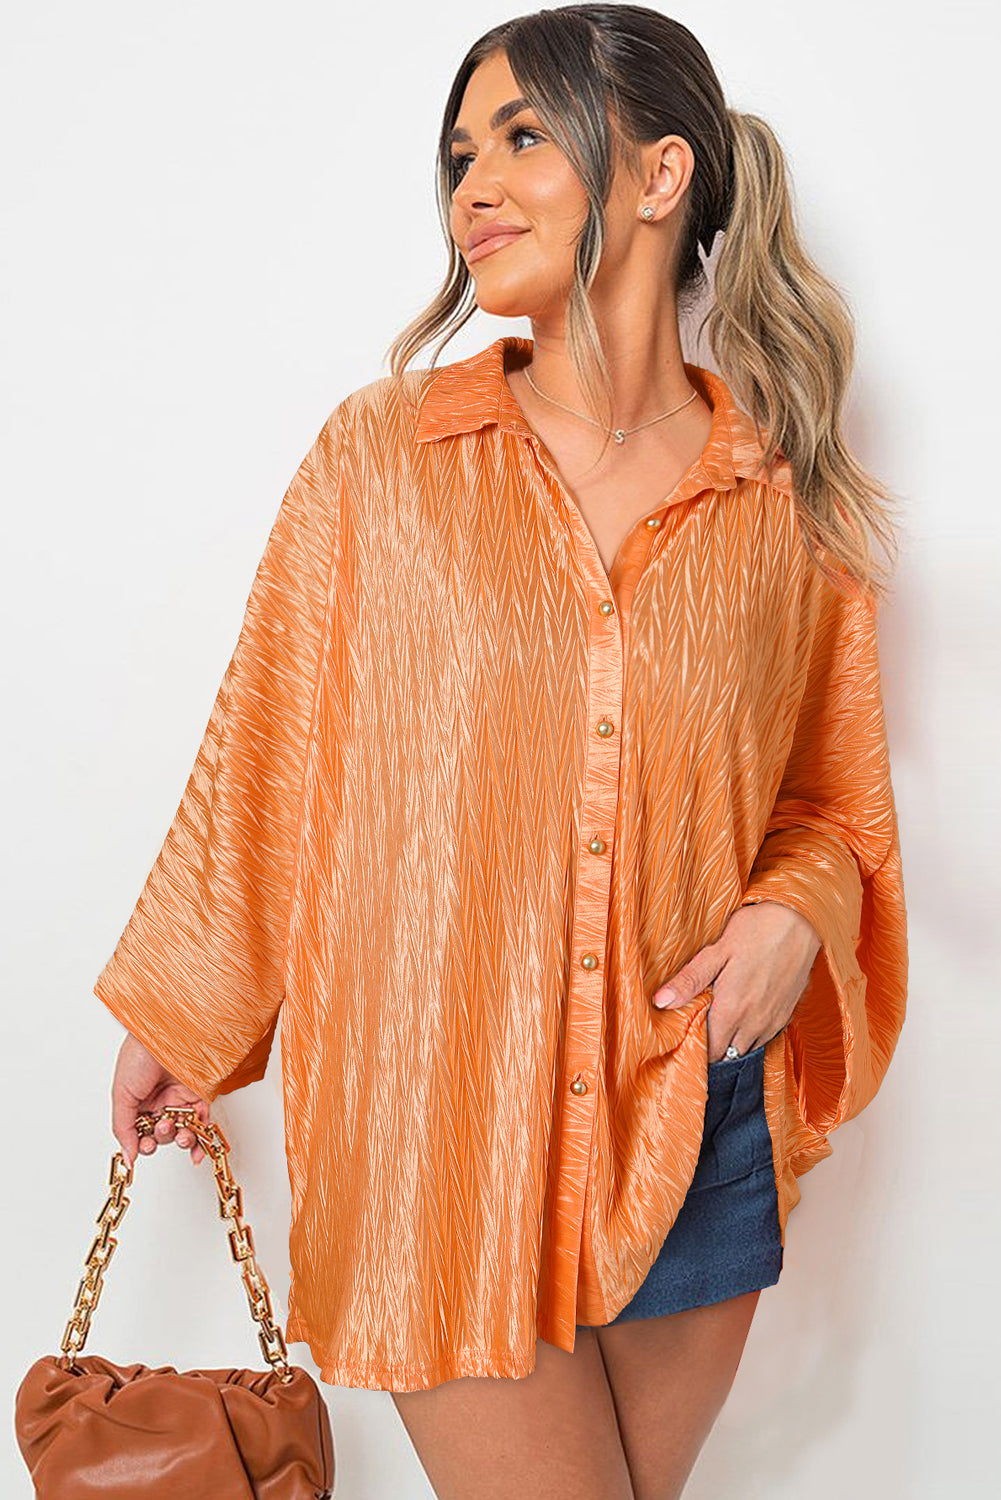 Chemise boutonnée à manches larges froissée de couleur unie orange pamplemousse